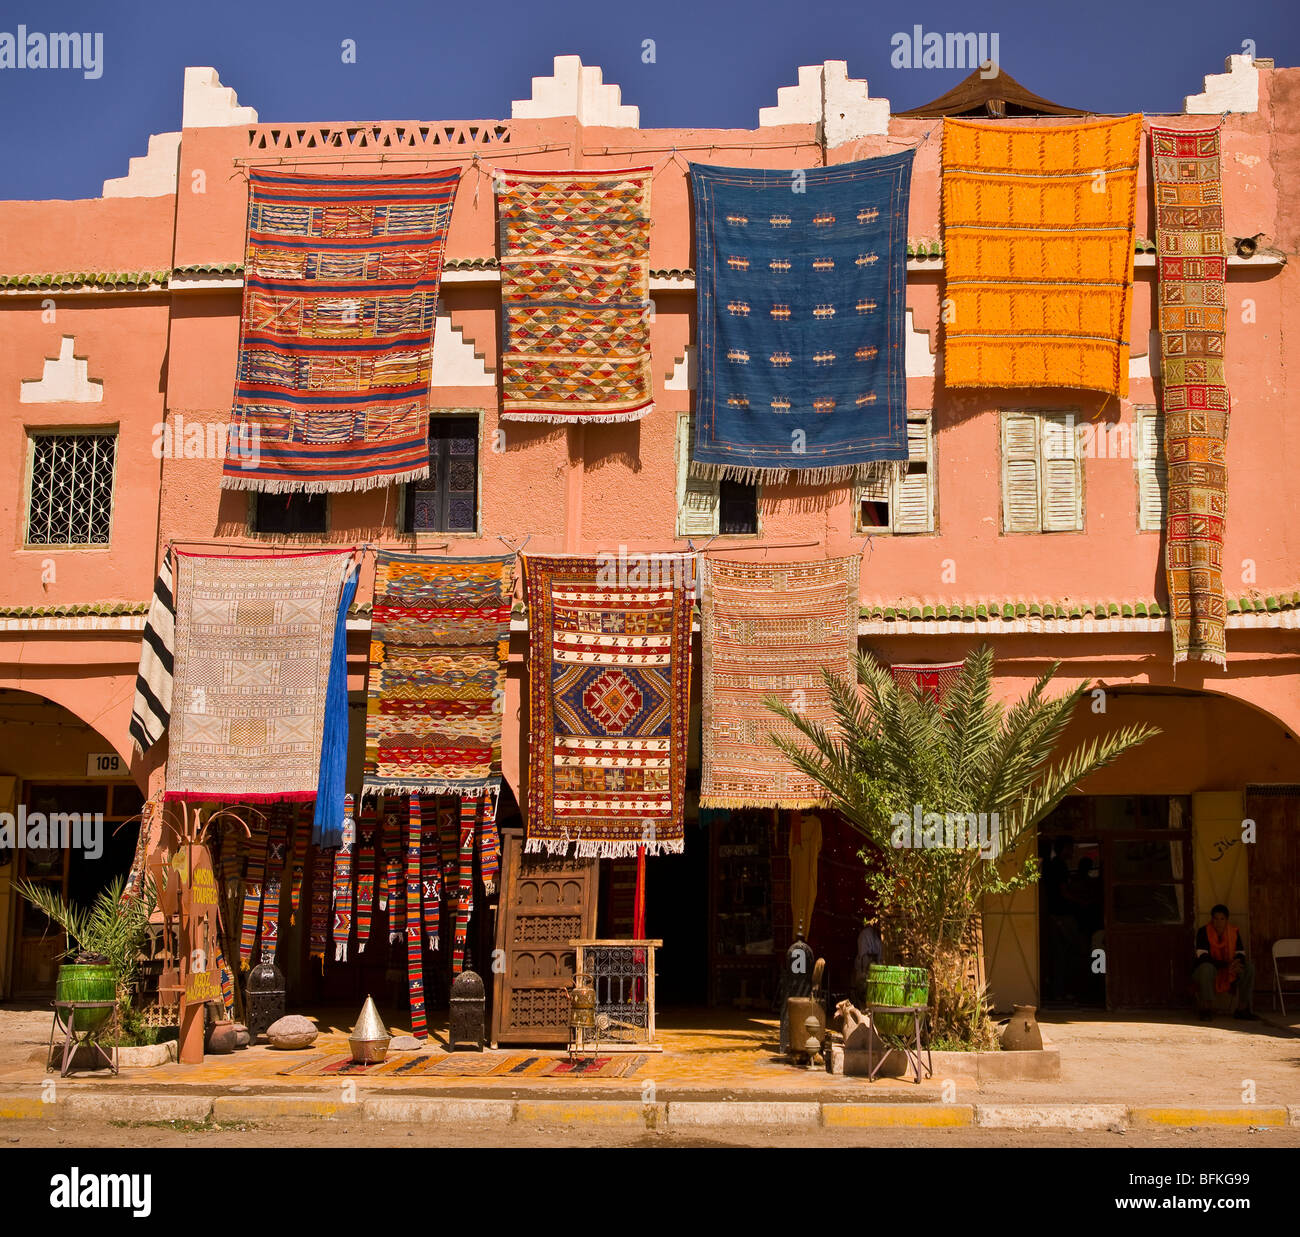 AGDZ, Marocco - negozio di tappeti nella città di Agdz, nella Valle del Draa. Foto Stock